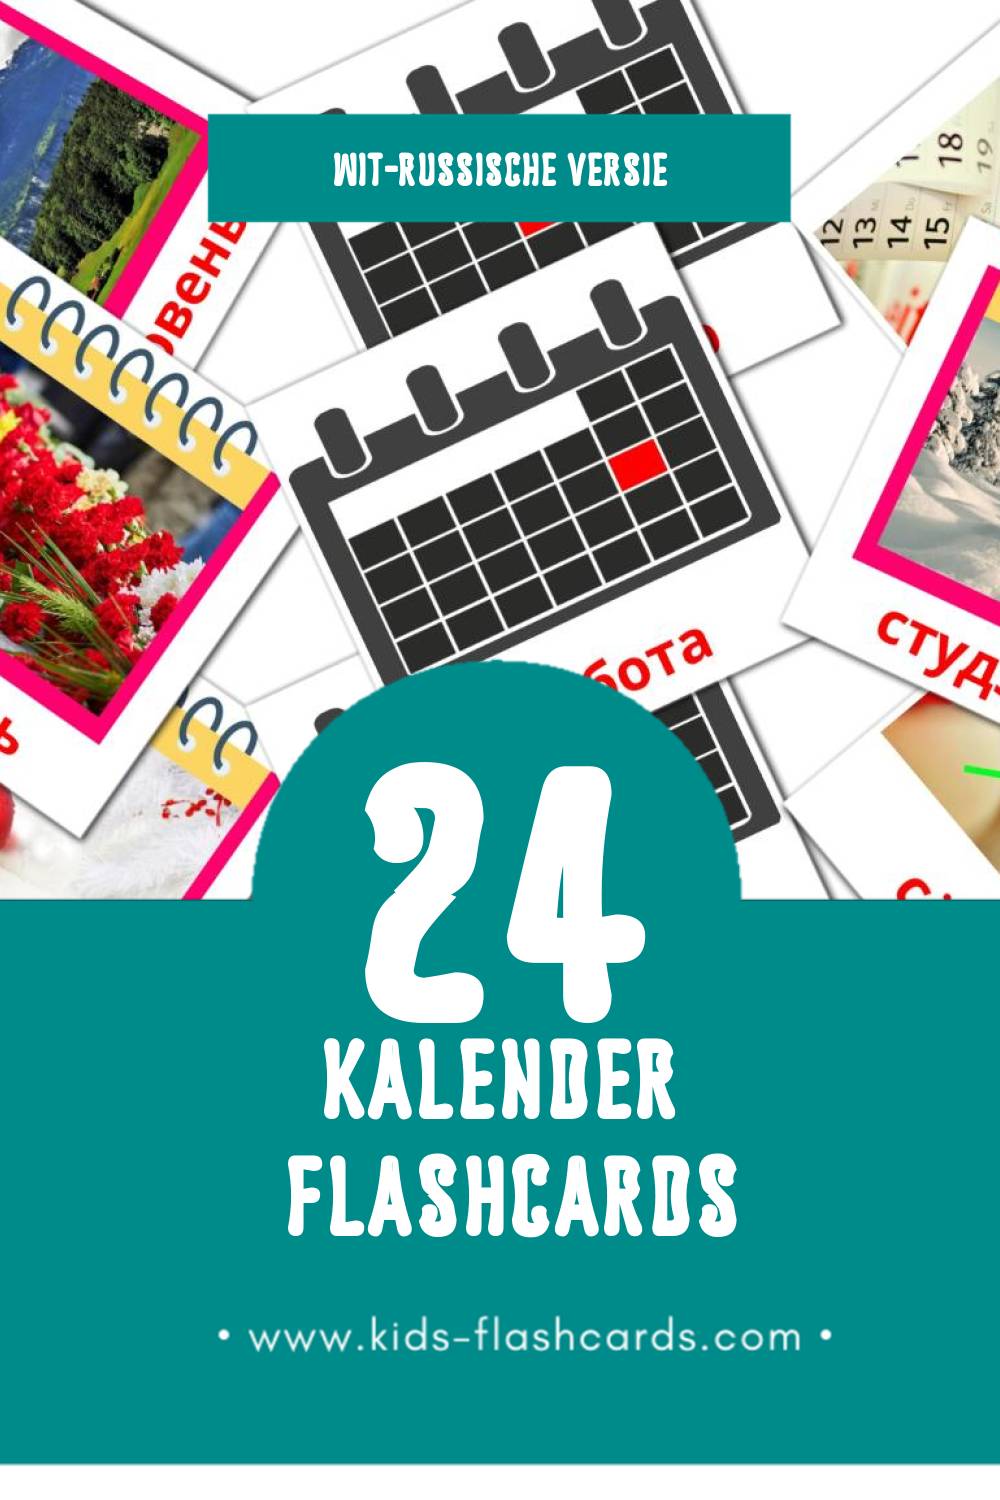 Visuele Каляндар Flashcards voor Kleuters (24 kaarten in het Wit-russisch)